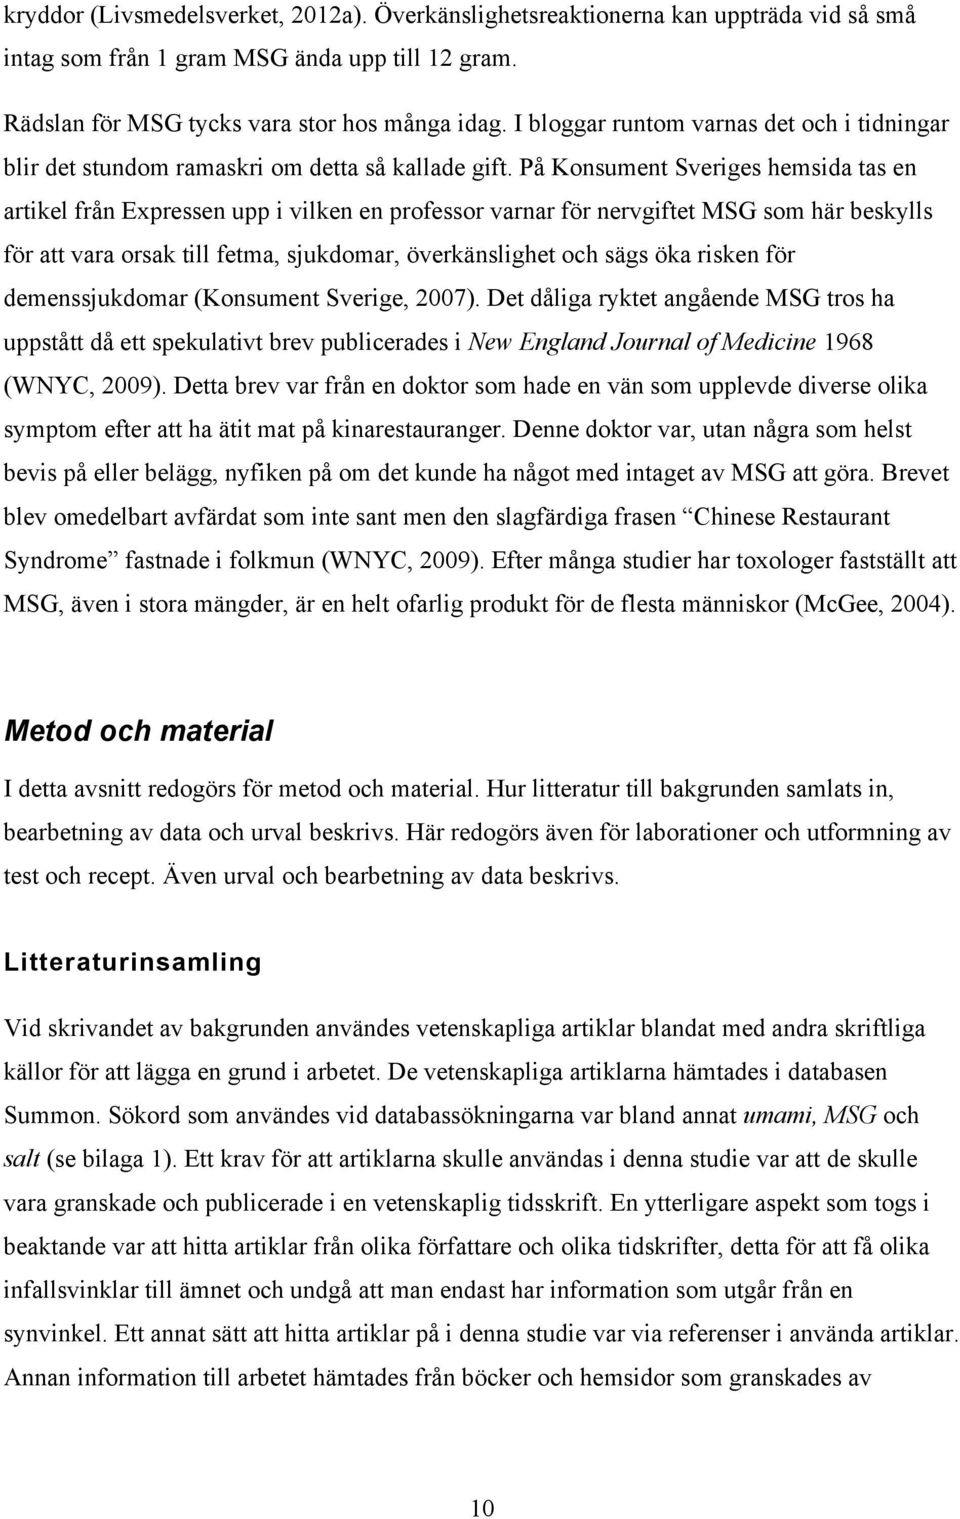 På Konsument Sveriges hemsida tas en artikel från Expressen upp i vilken en professor varnar för nervgiftet MSG som här beskylls för att vara orsak till fetma, sjukdomar, överkänslighet och sägs öka